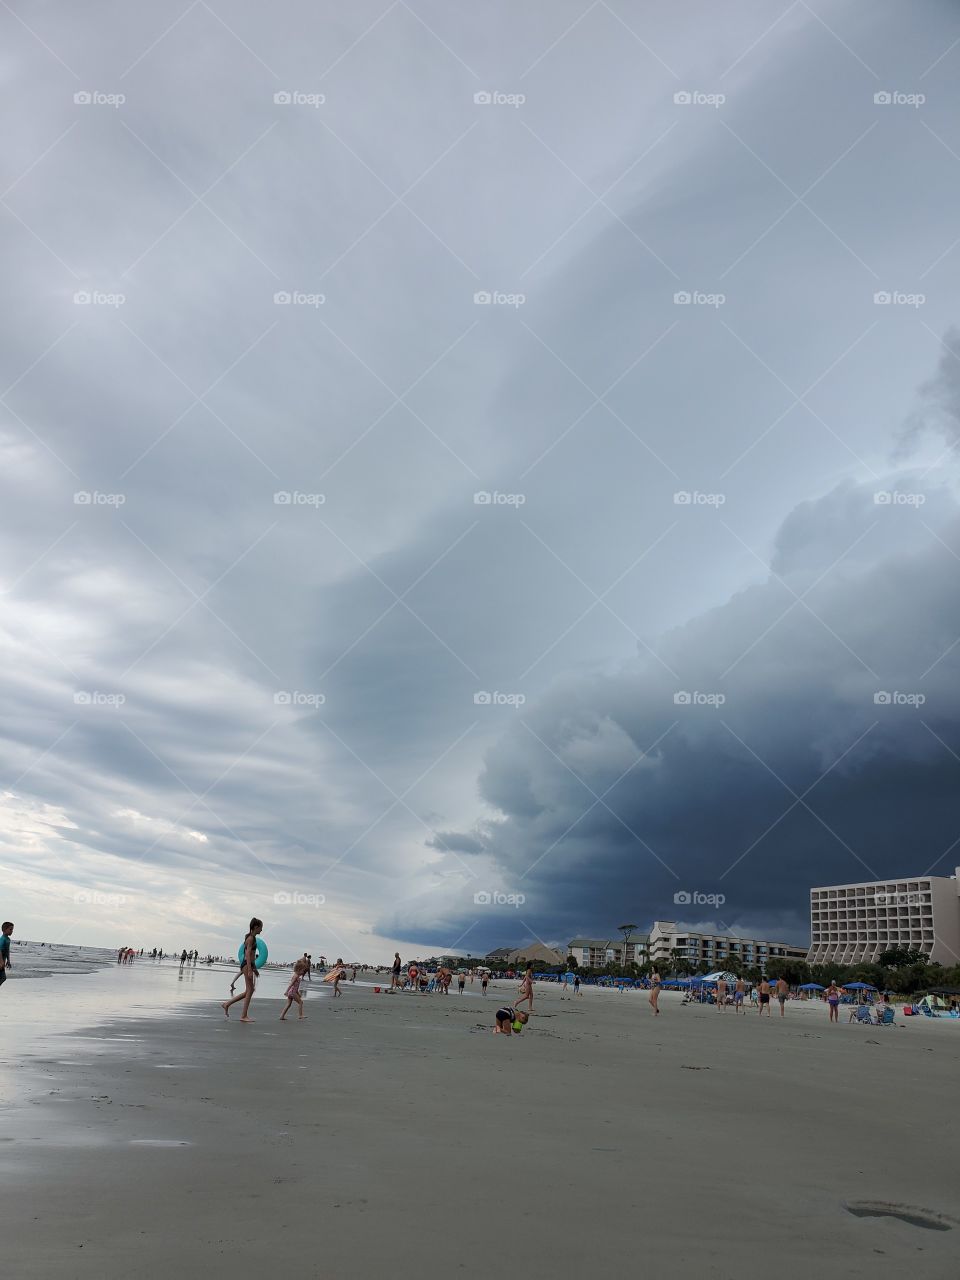 storm approaches beach